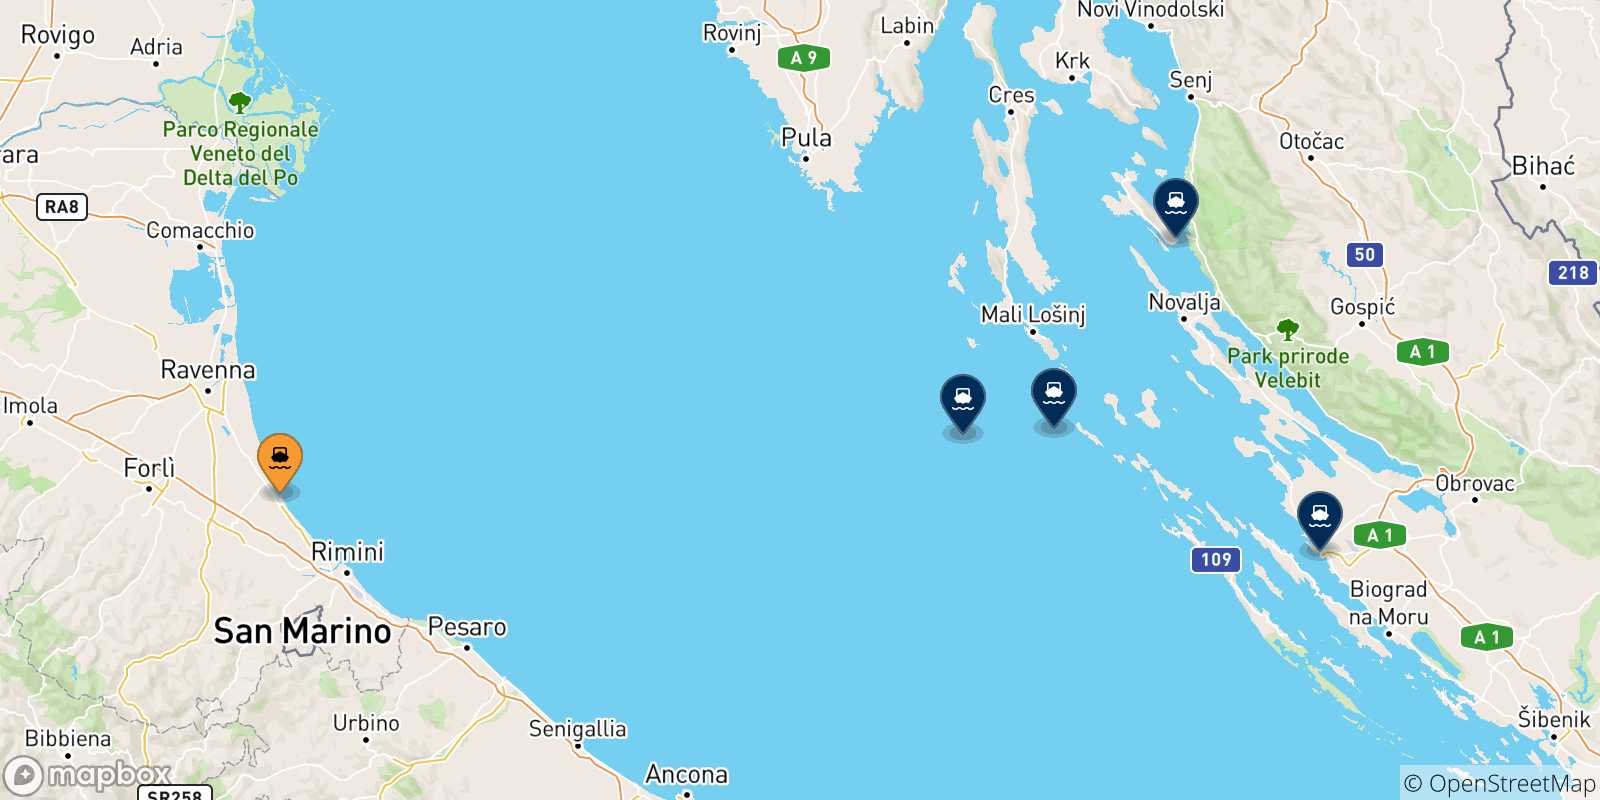 Mappa delle possibili rotte tra Cesenatico e la Croazia